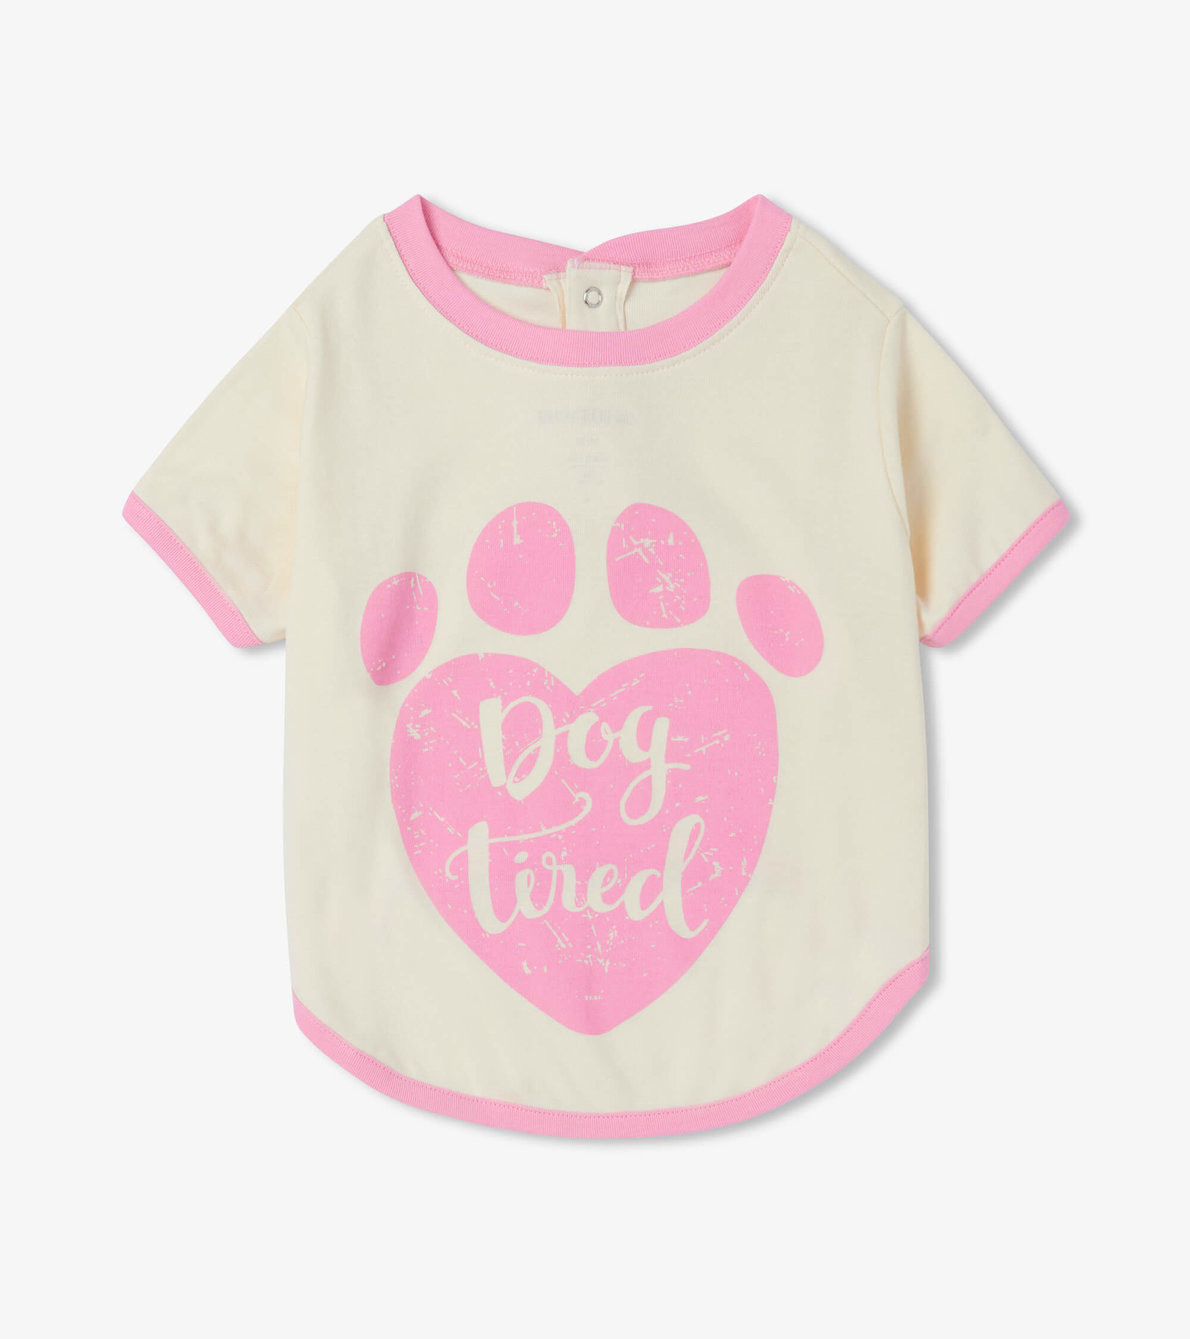 Agrandir l'image de T-shirt pour chien – Empreinte « Dog Tired »